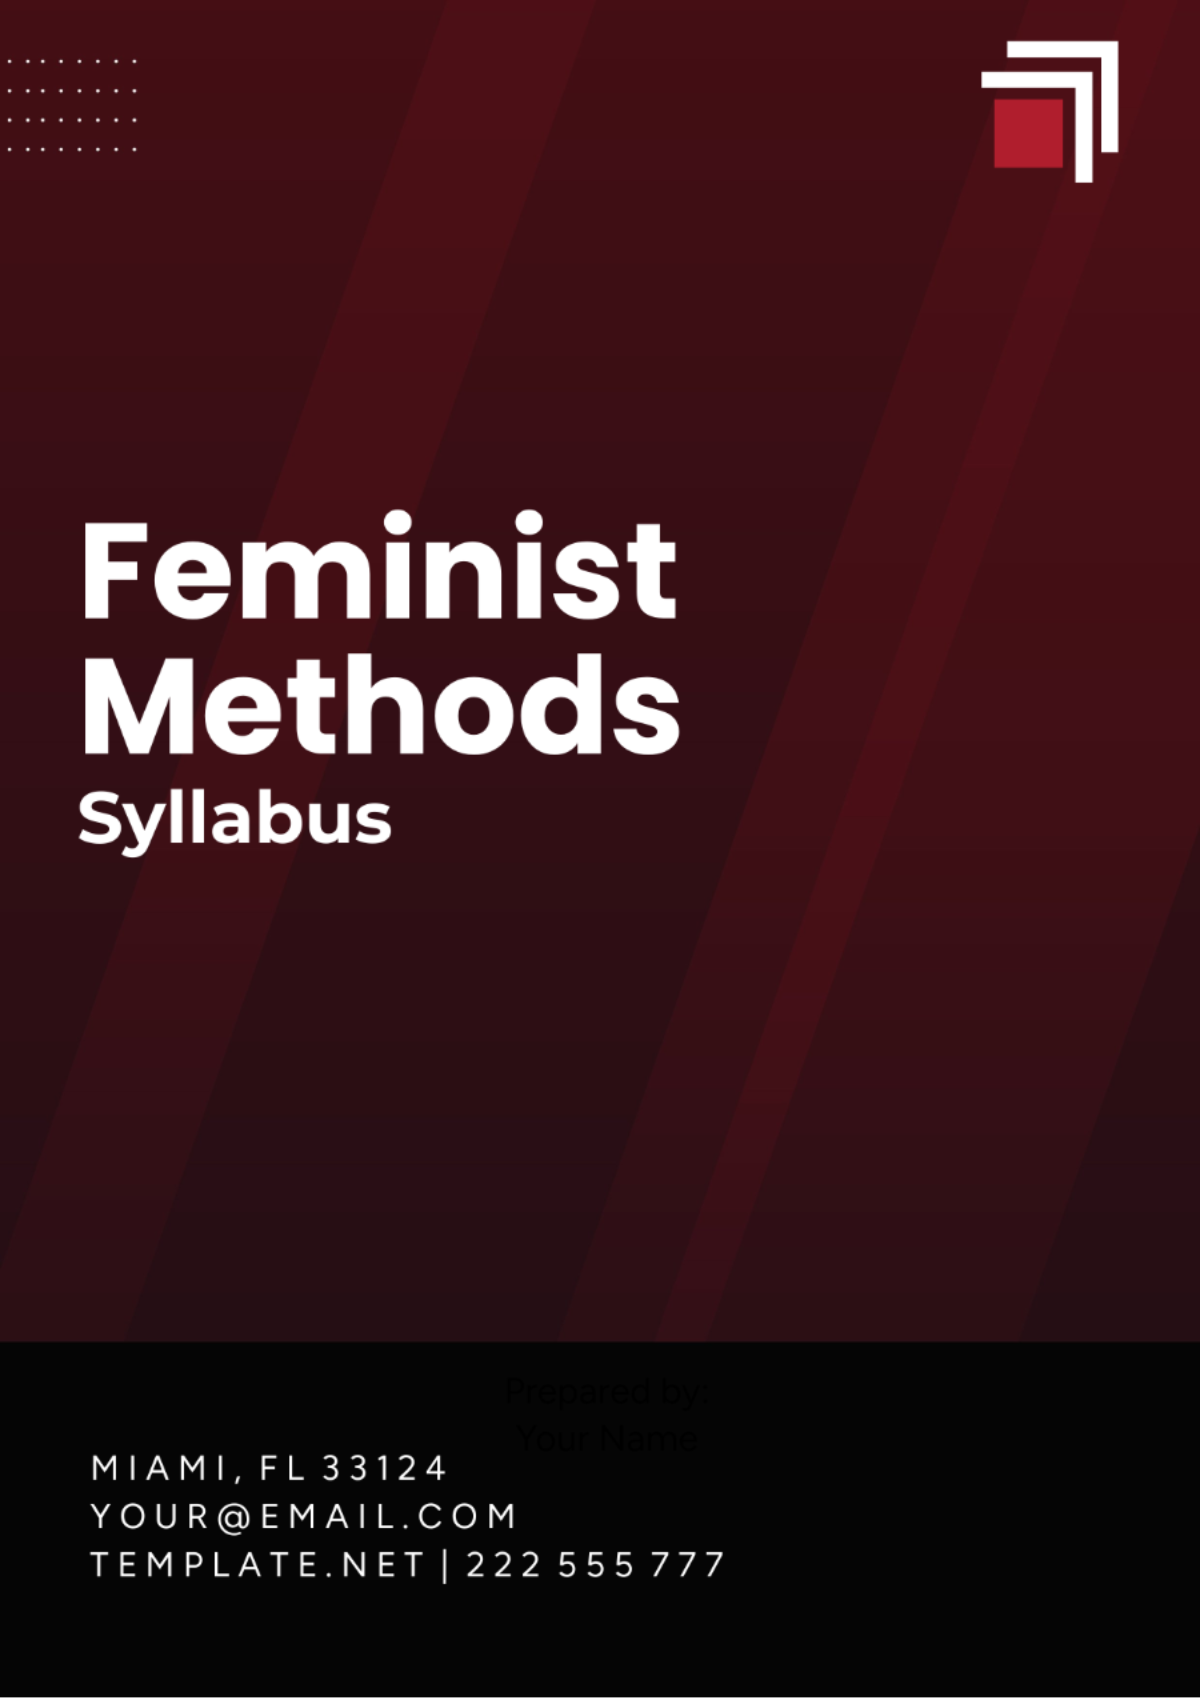 Feminist Methods Syllabus Template